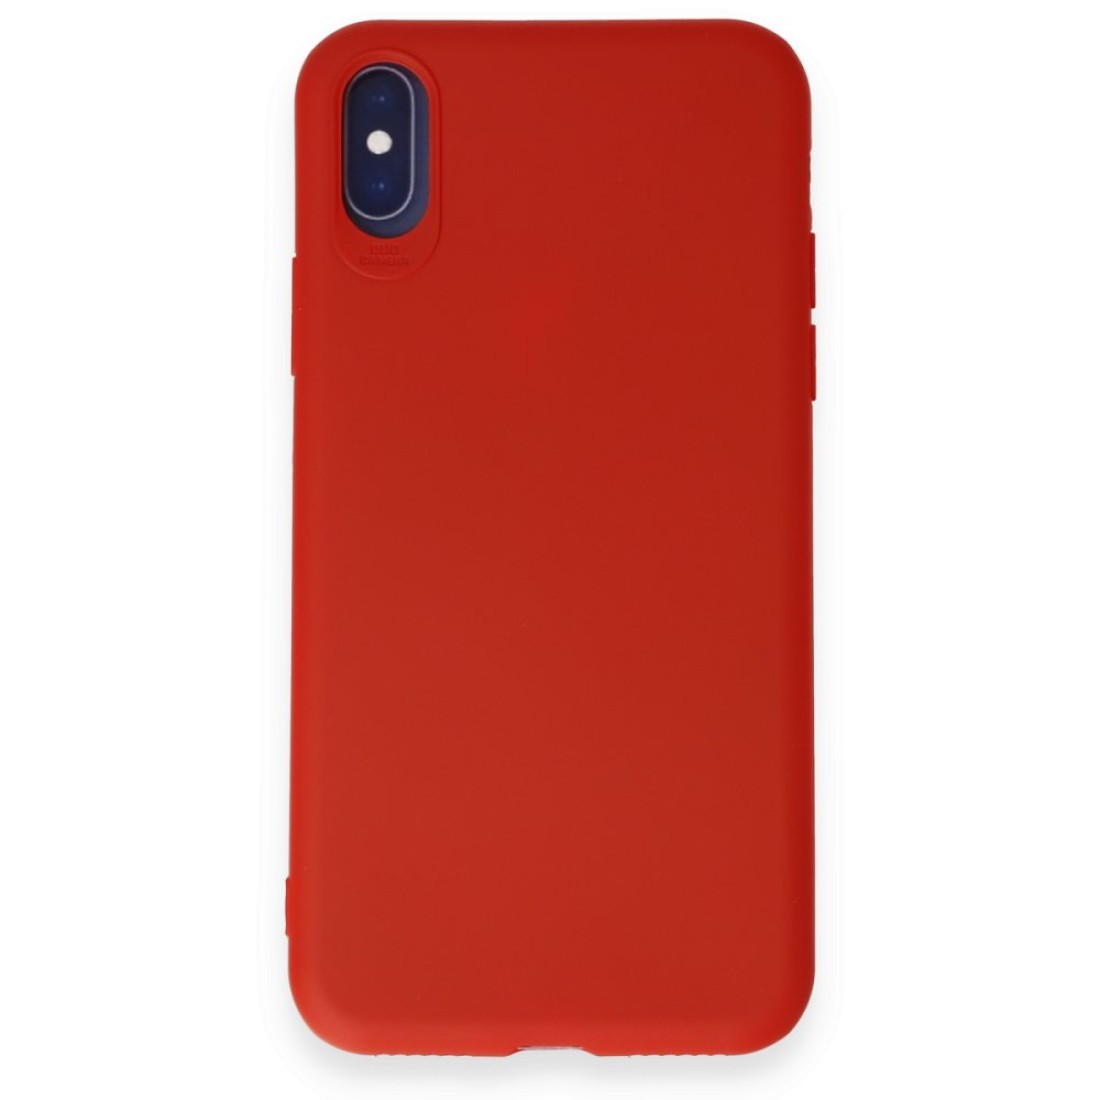 Apple iPhone X Kılıf First Silikon - Kırmızı